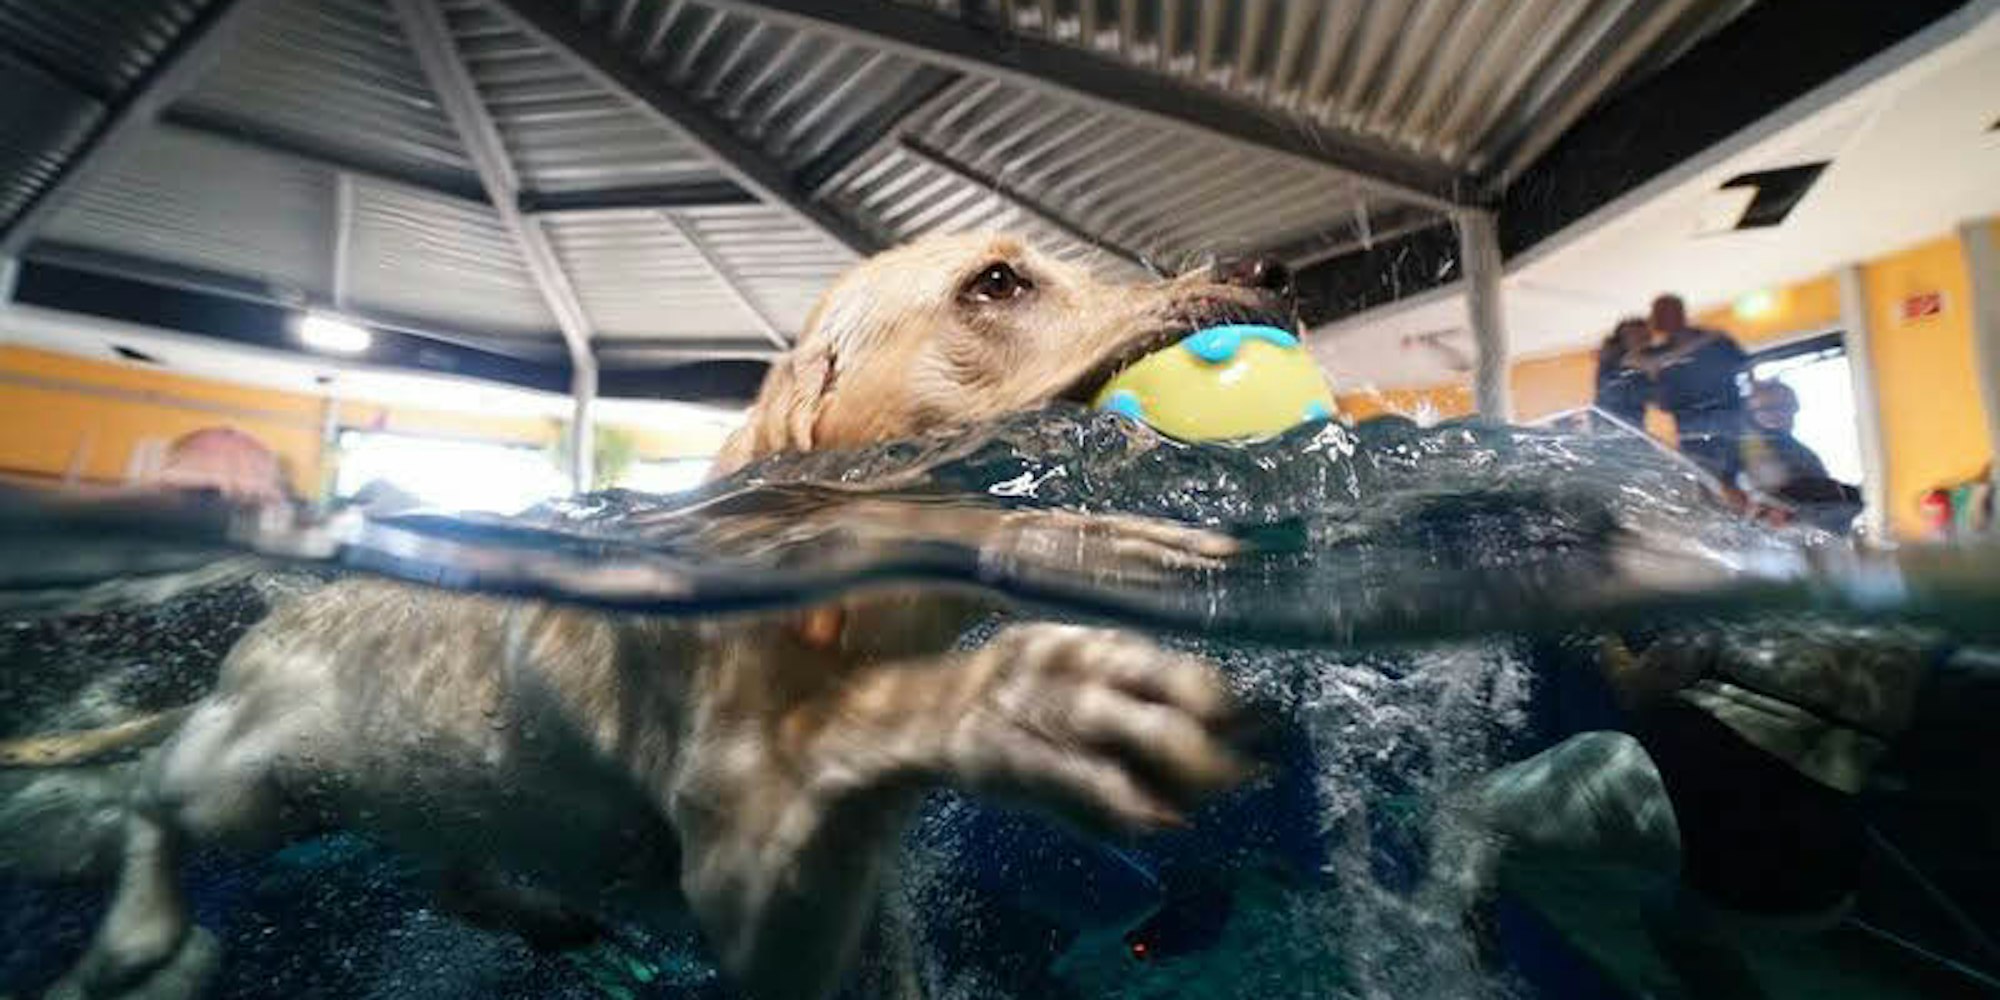 Viele Hunde hatten besonderen Spaß beim Apportieren aus dem Wasser.